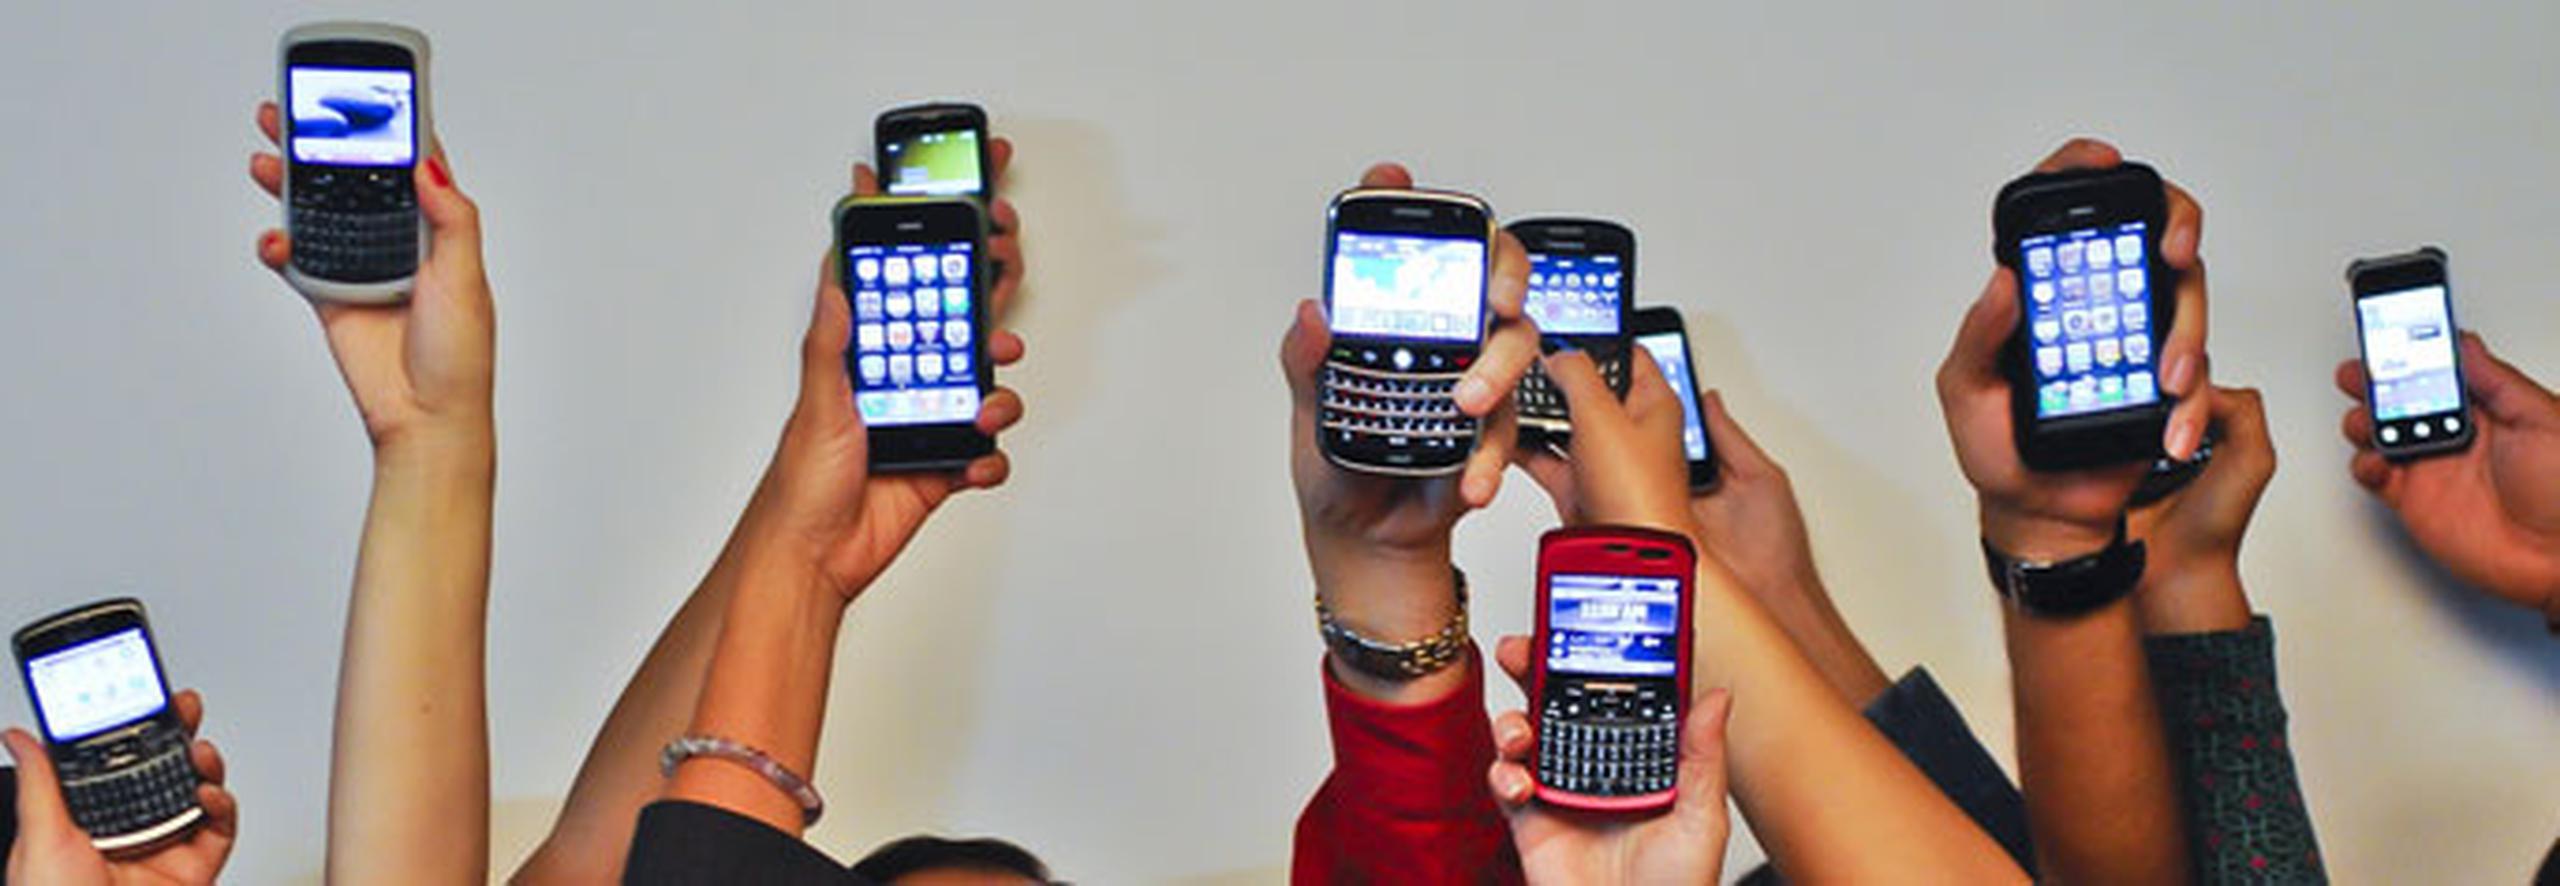 Ya hay más suscripciones de teléfonos móviles que personas en la Tierra